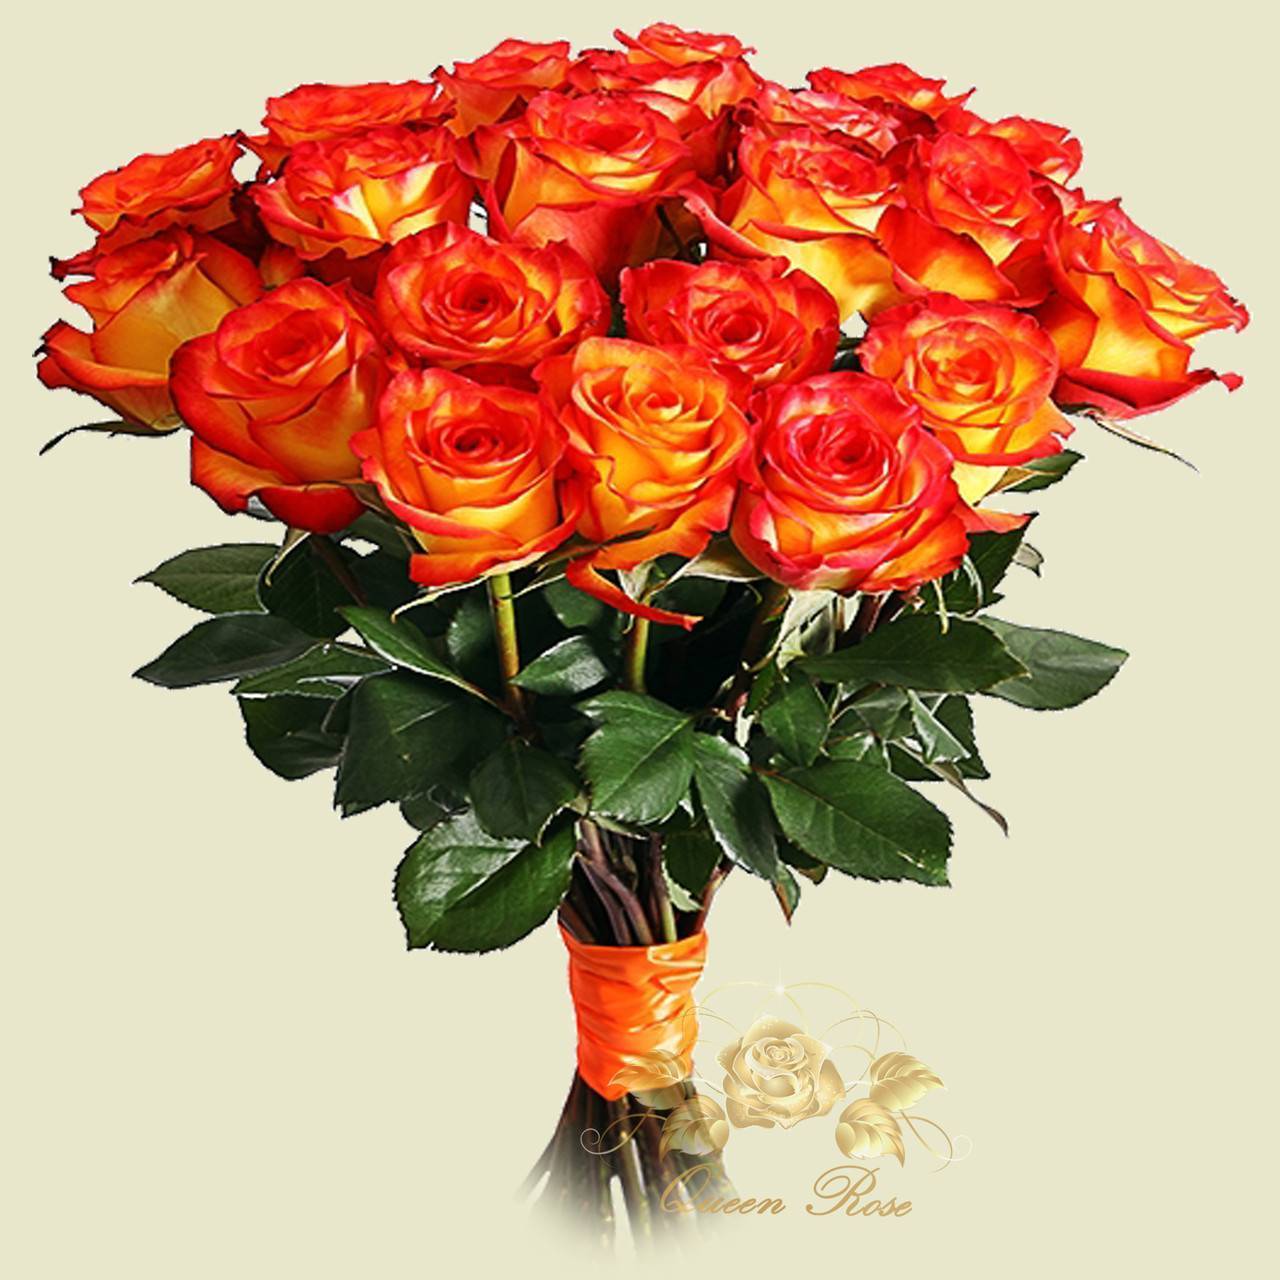 Об оранжевых розах: описание сортов плетистой кустовой розы оранжевого цвета